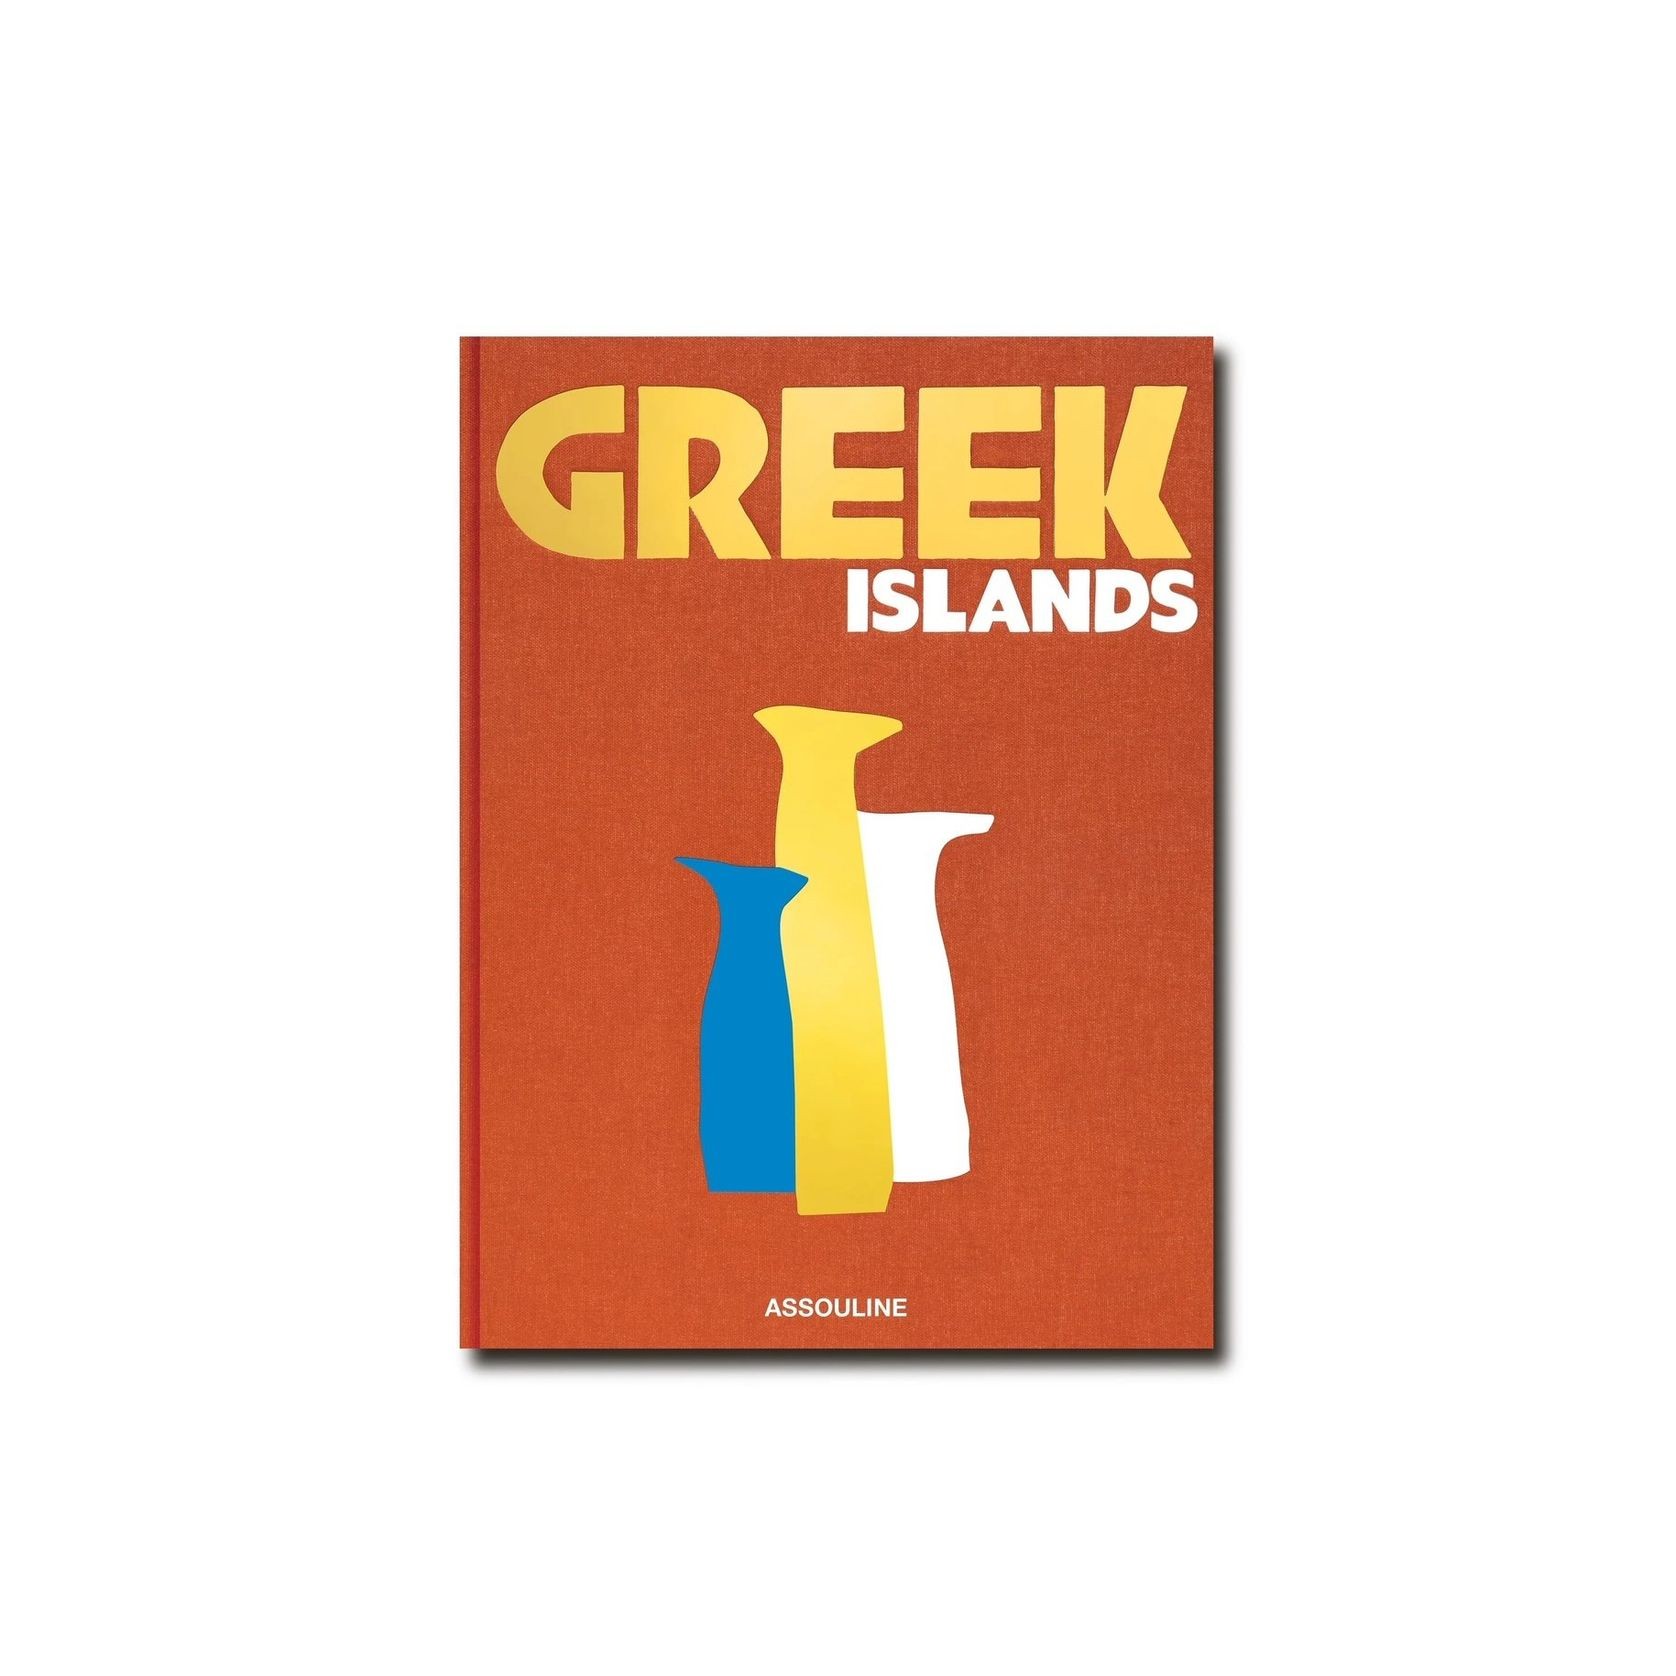 Greek Islands gallery detail image